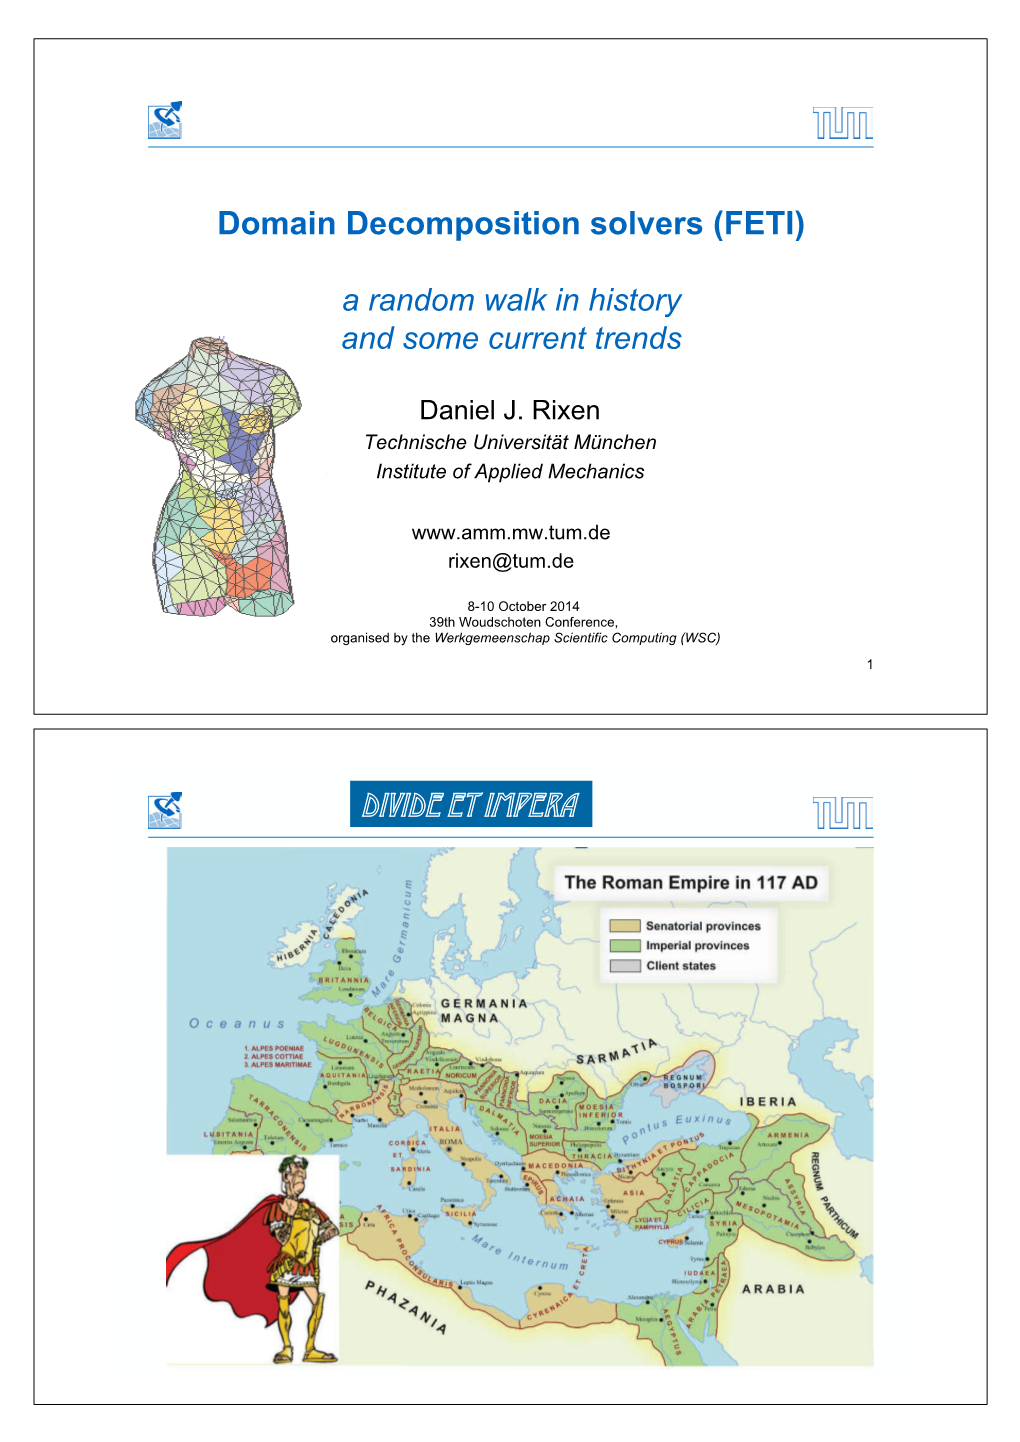 Domain Decomposition Solvers (FETI) Divide Et Impera